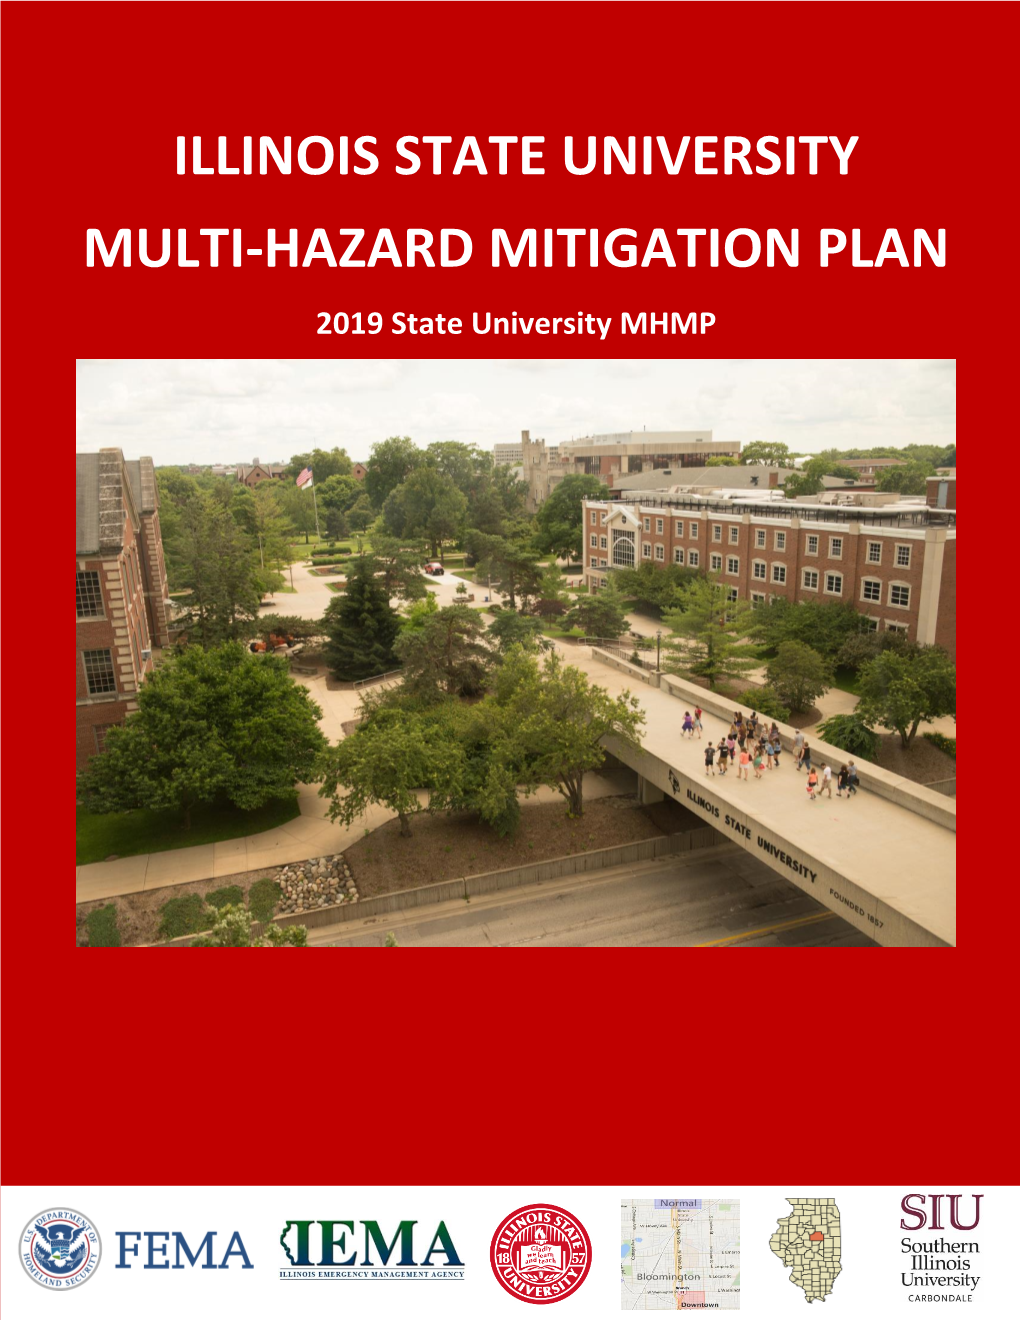 Illinois State University Multi-Hazard Mitigation Plan